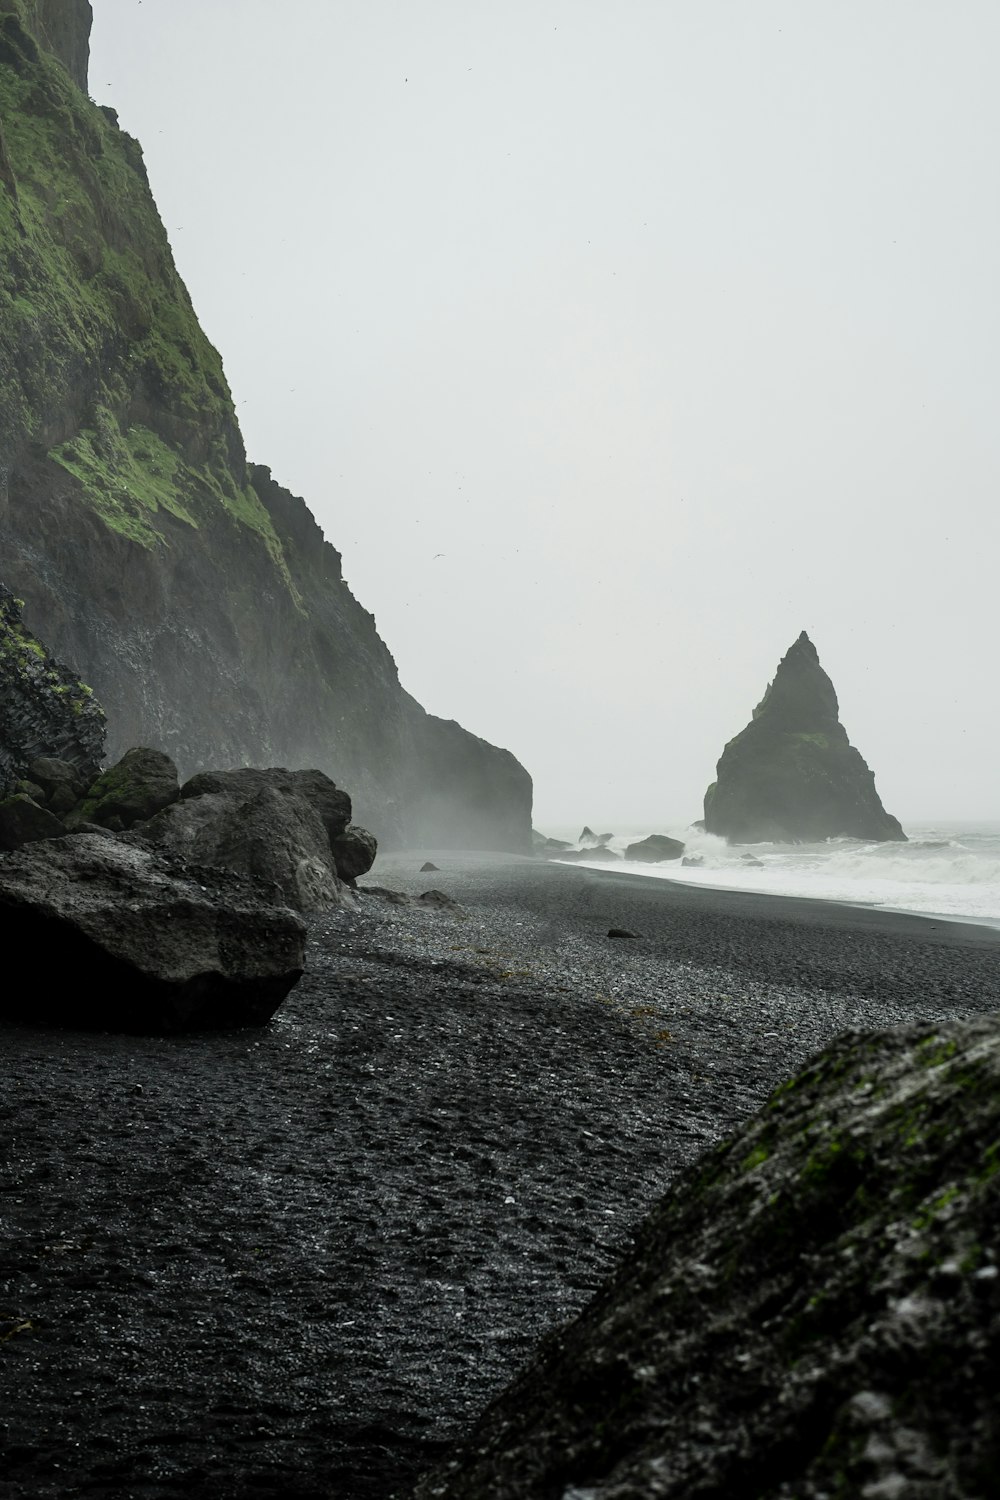 해변 근처 수역에 있는 검은 암석의 풍경 사진